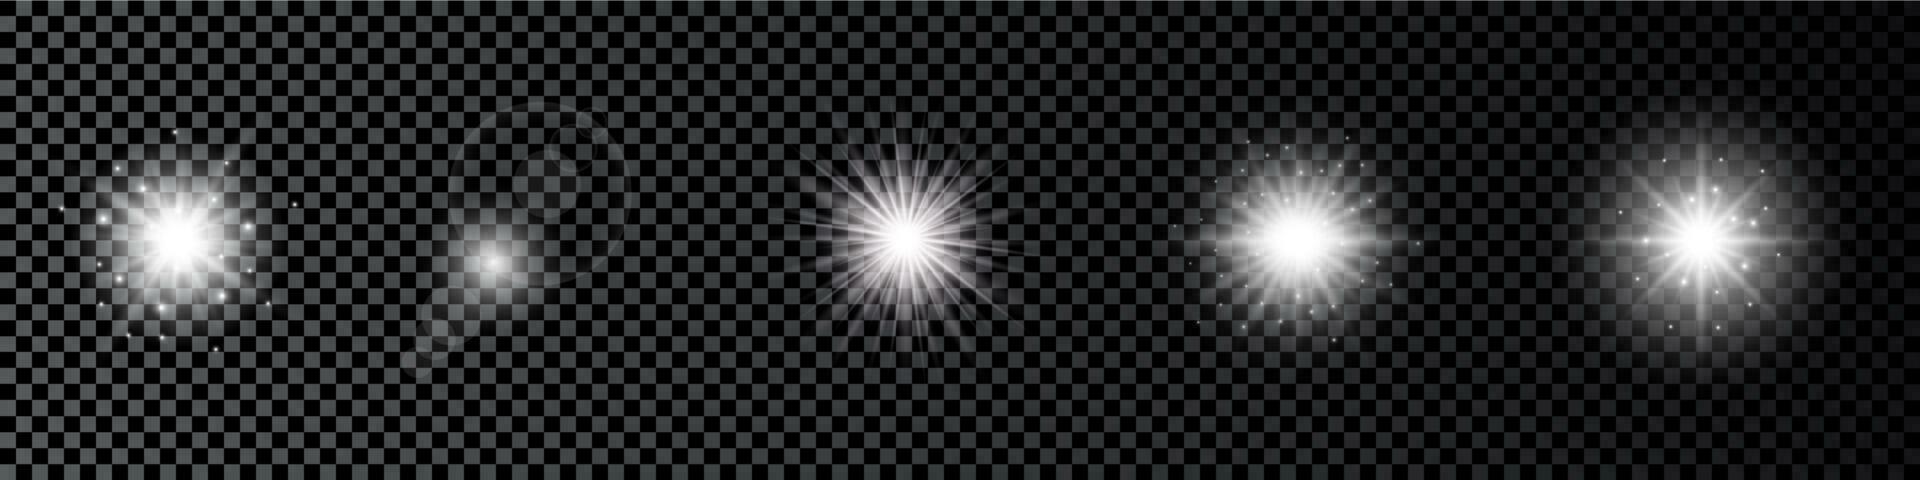 ljus effekt av lins bloss. uppsättning av fem vit lysande lampor starburst effekter med pärlar på en mörk bakgrund. vektor illustration